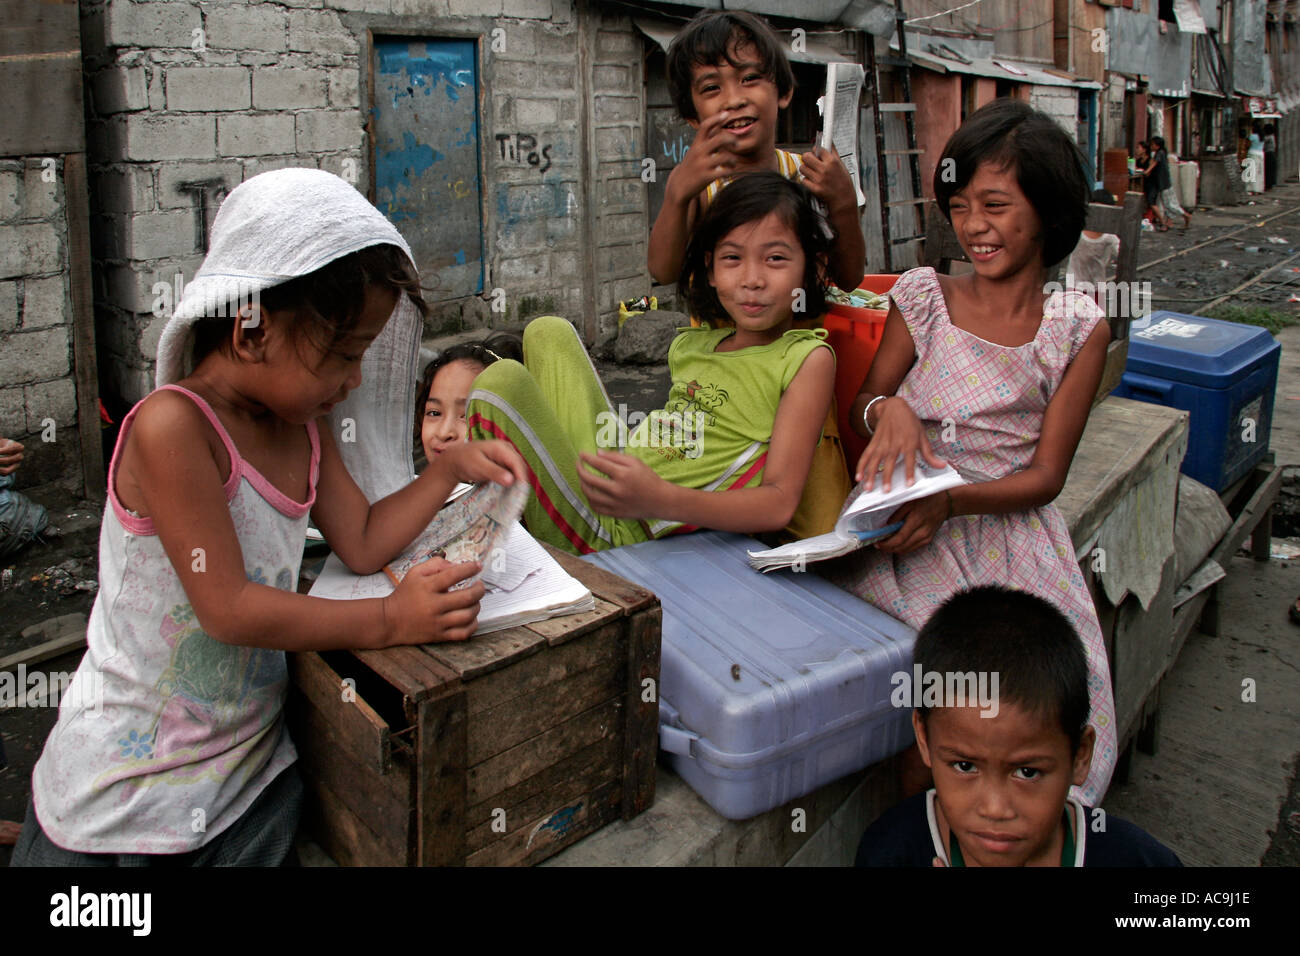 Manila Philippines Slums Children